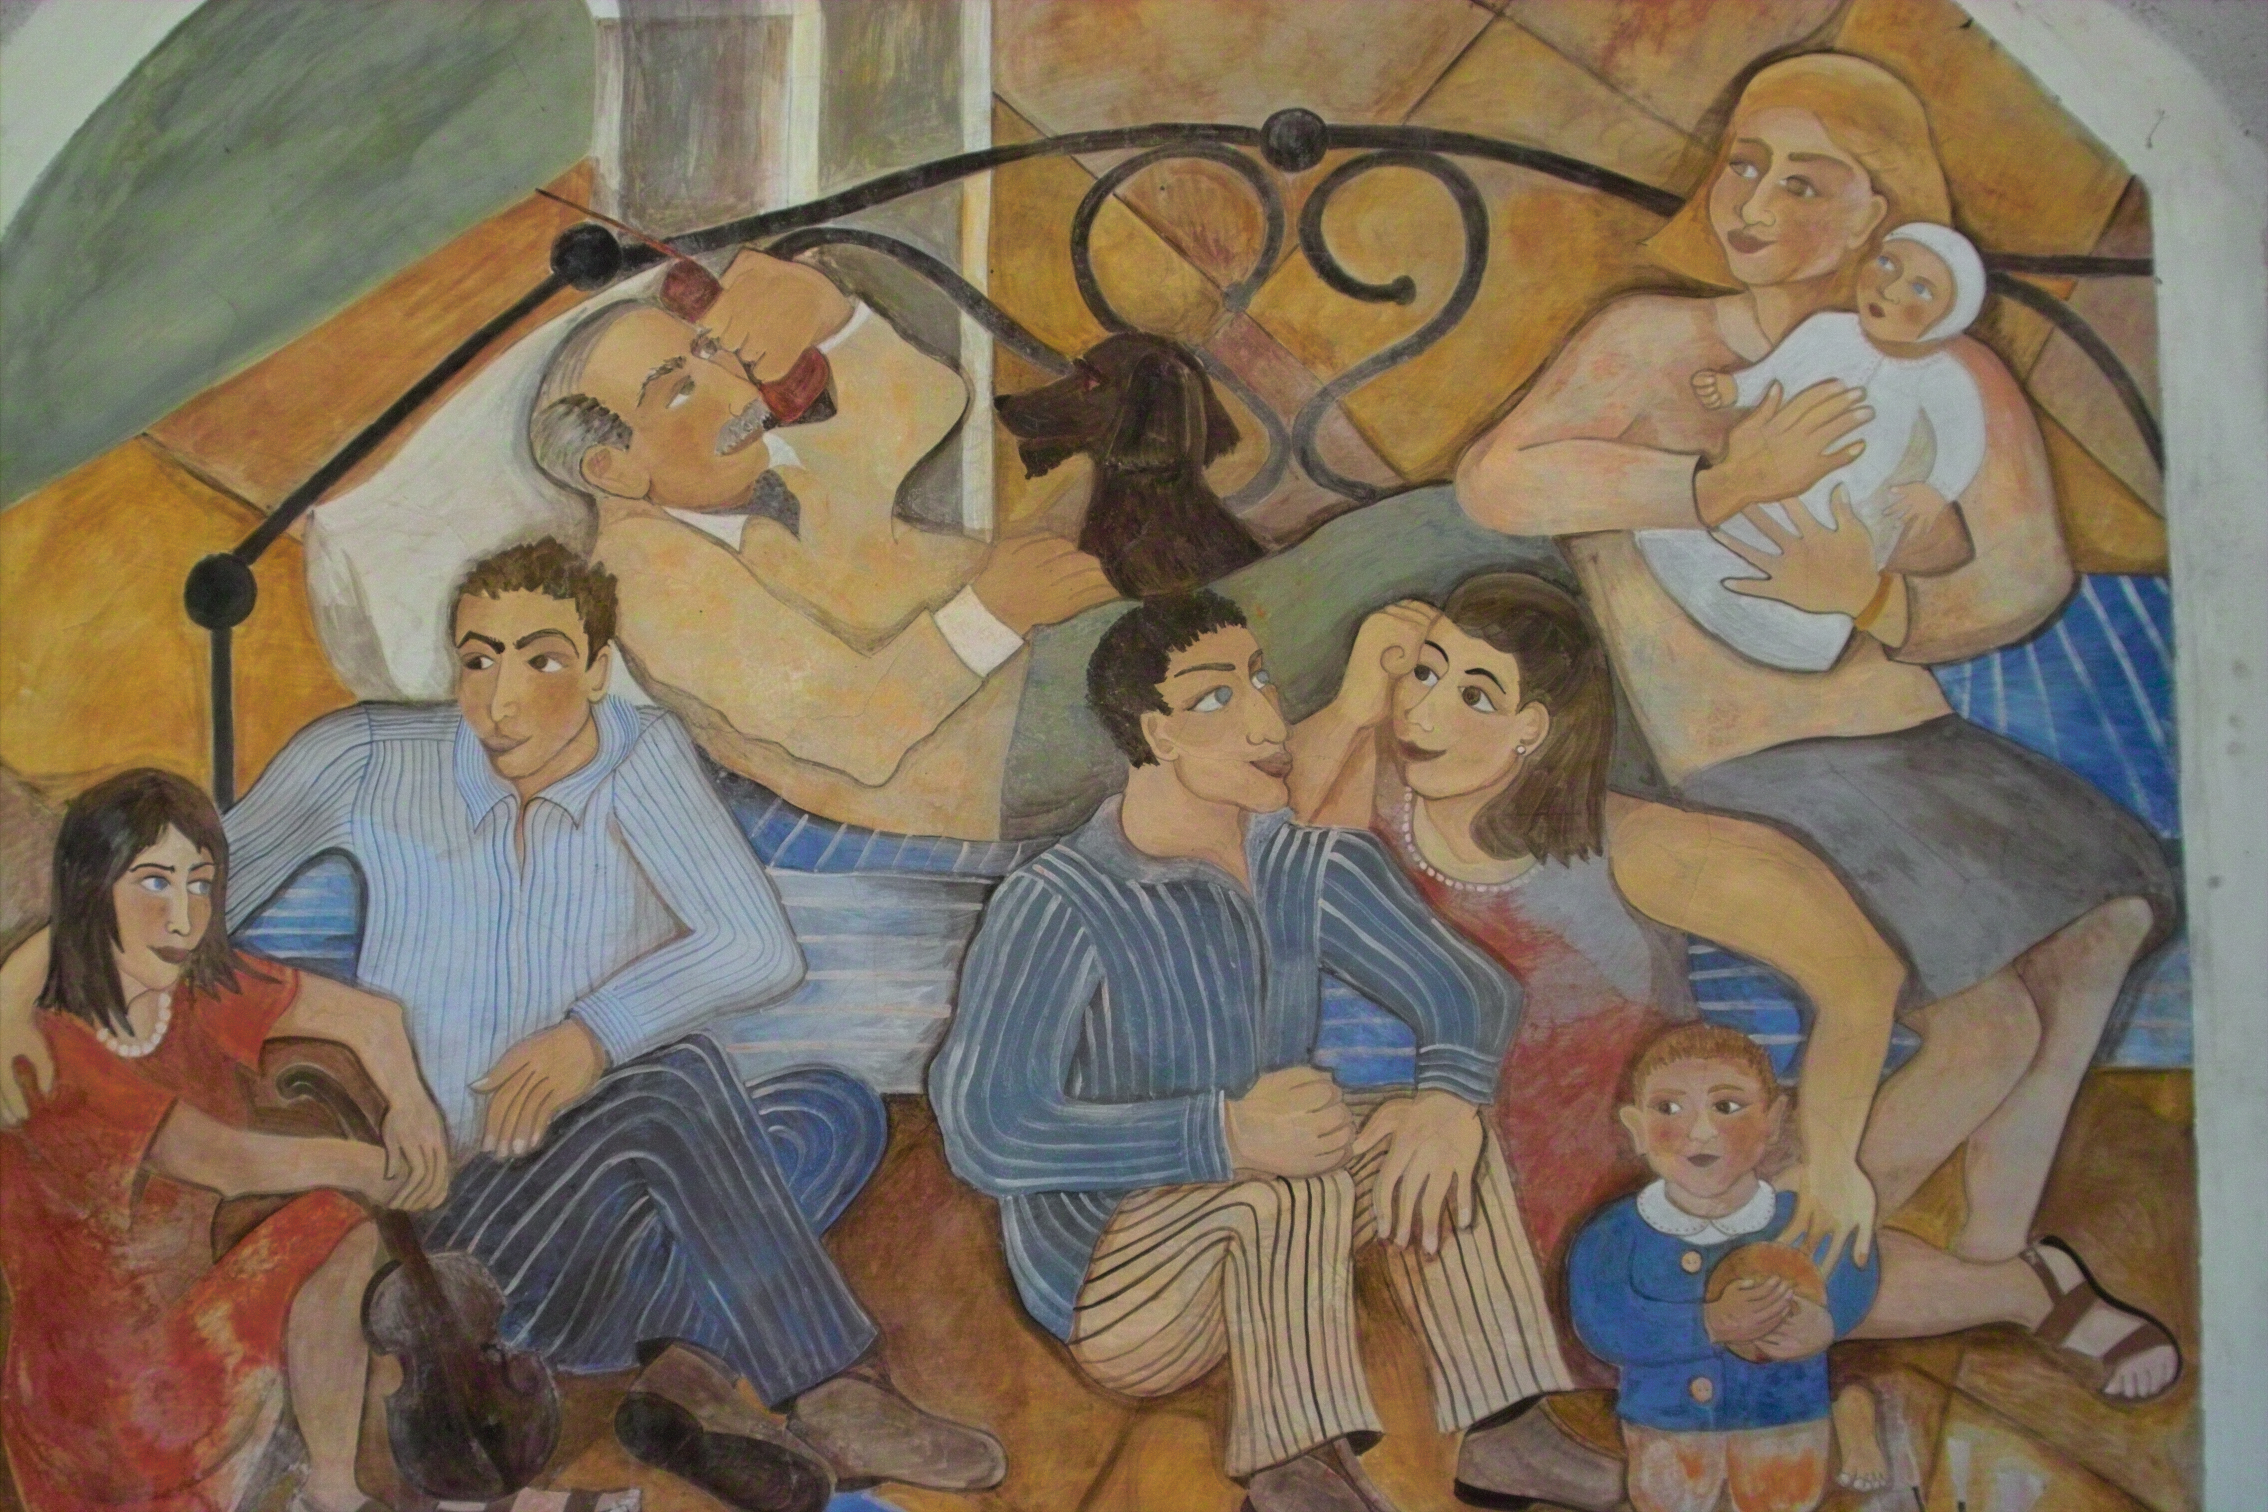  "Family Fresco", fresco on stone wall, 10'x10', 1996, Sparone, Italy 